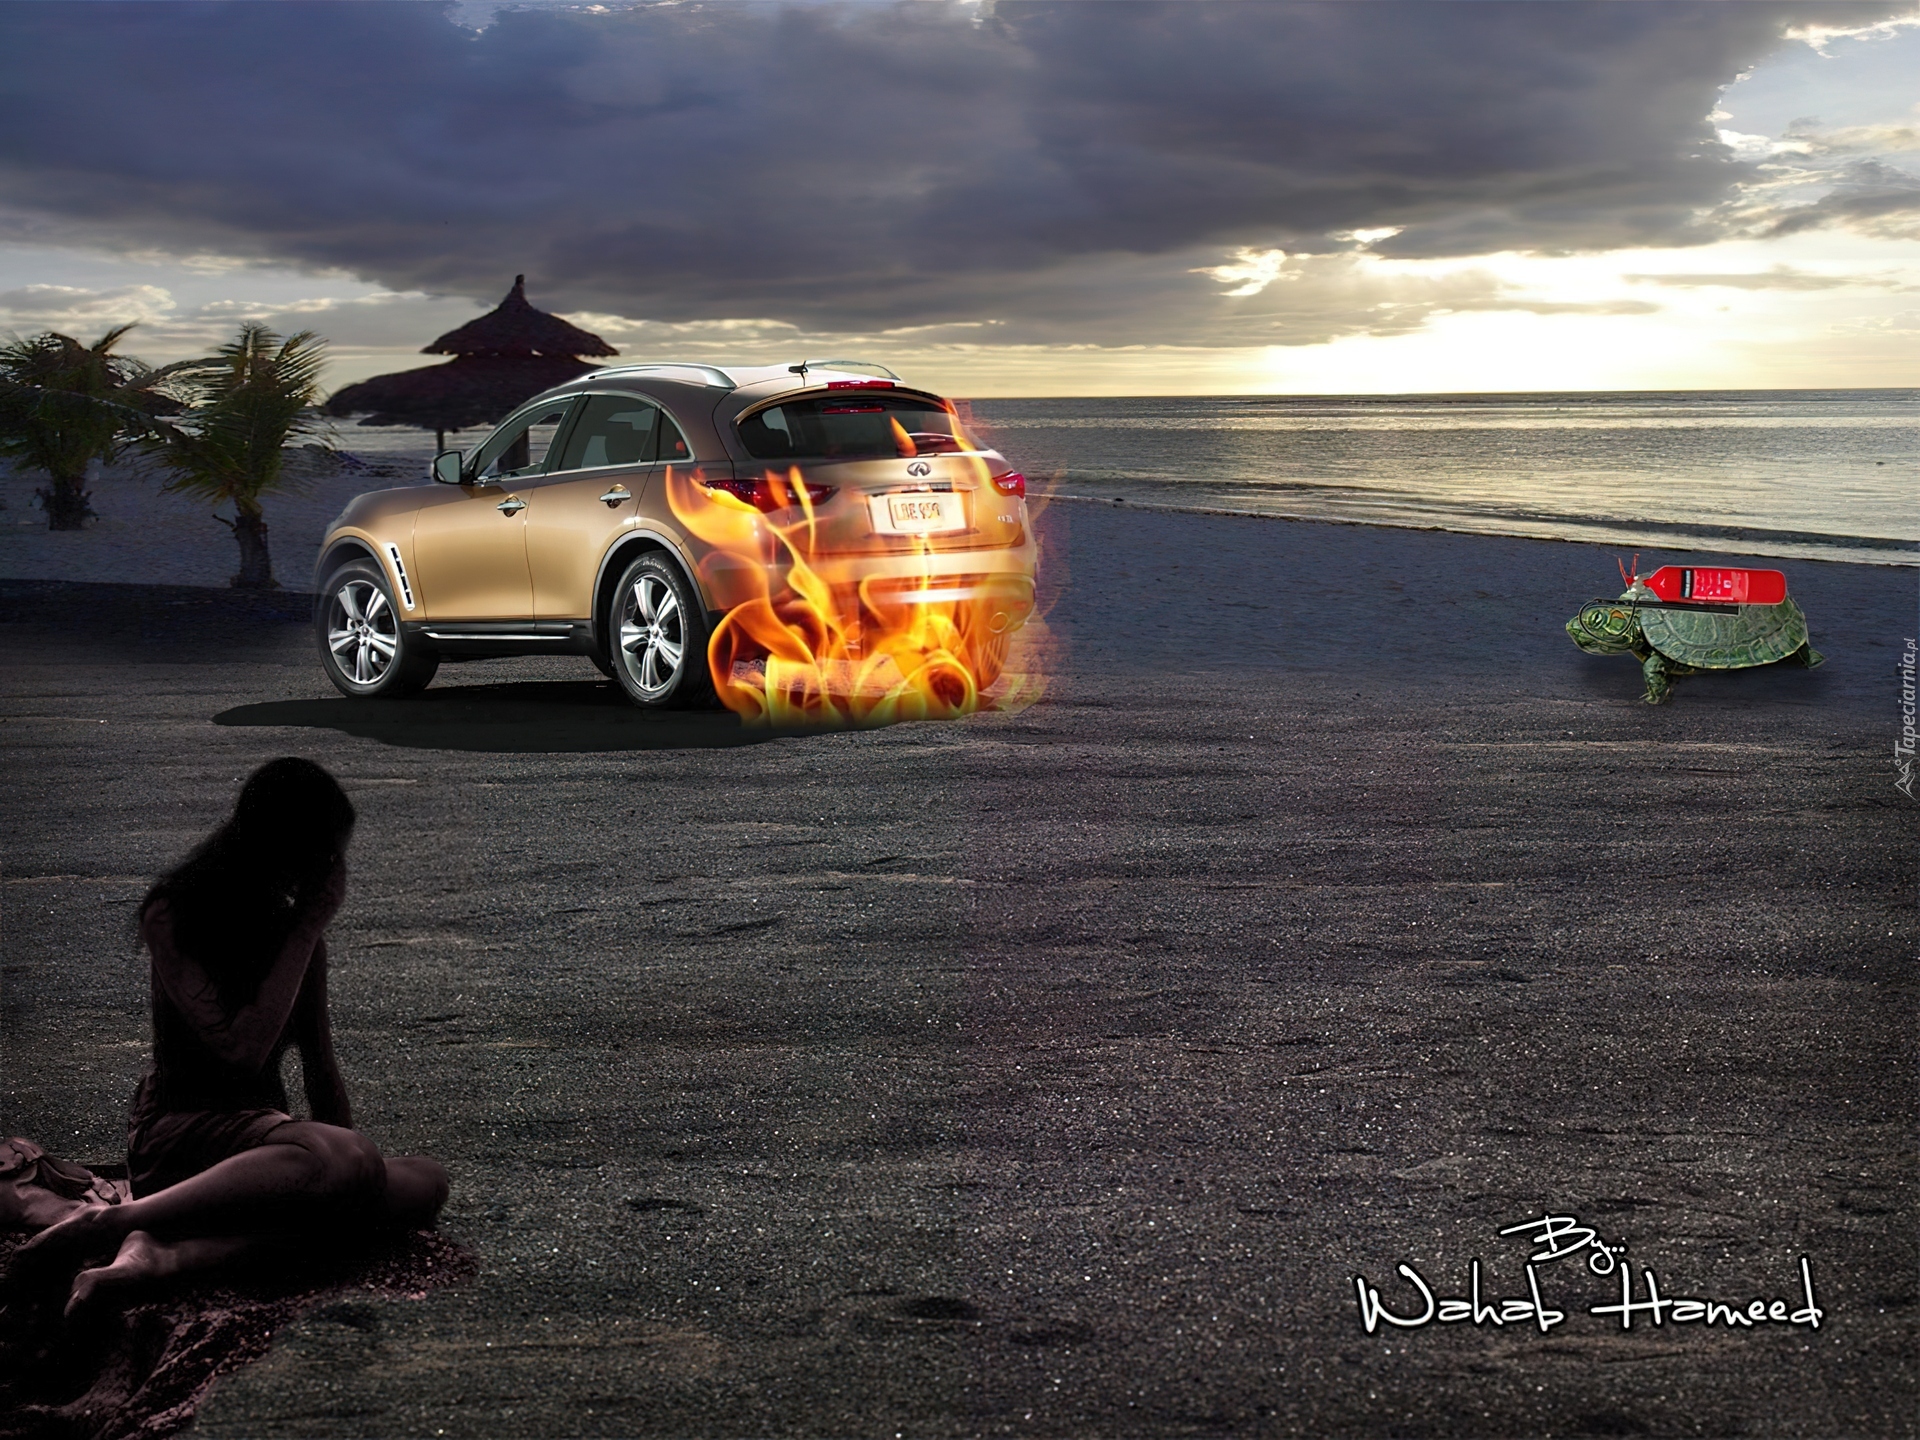 Samochód, Ogień, Morze, Plaża